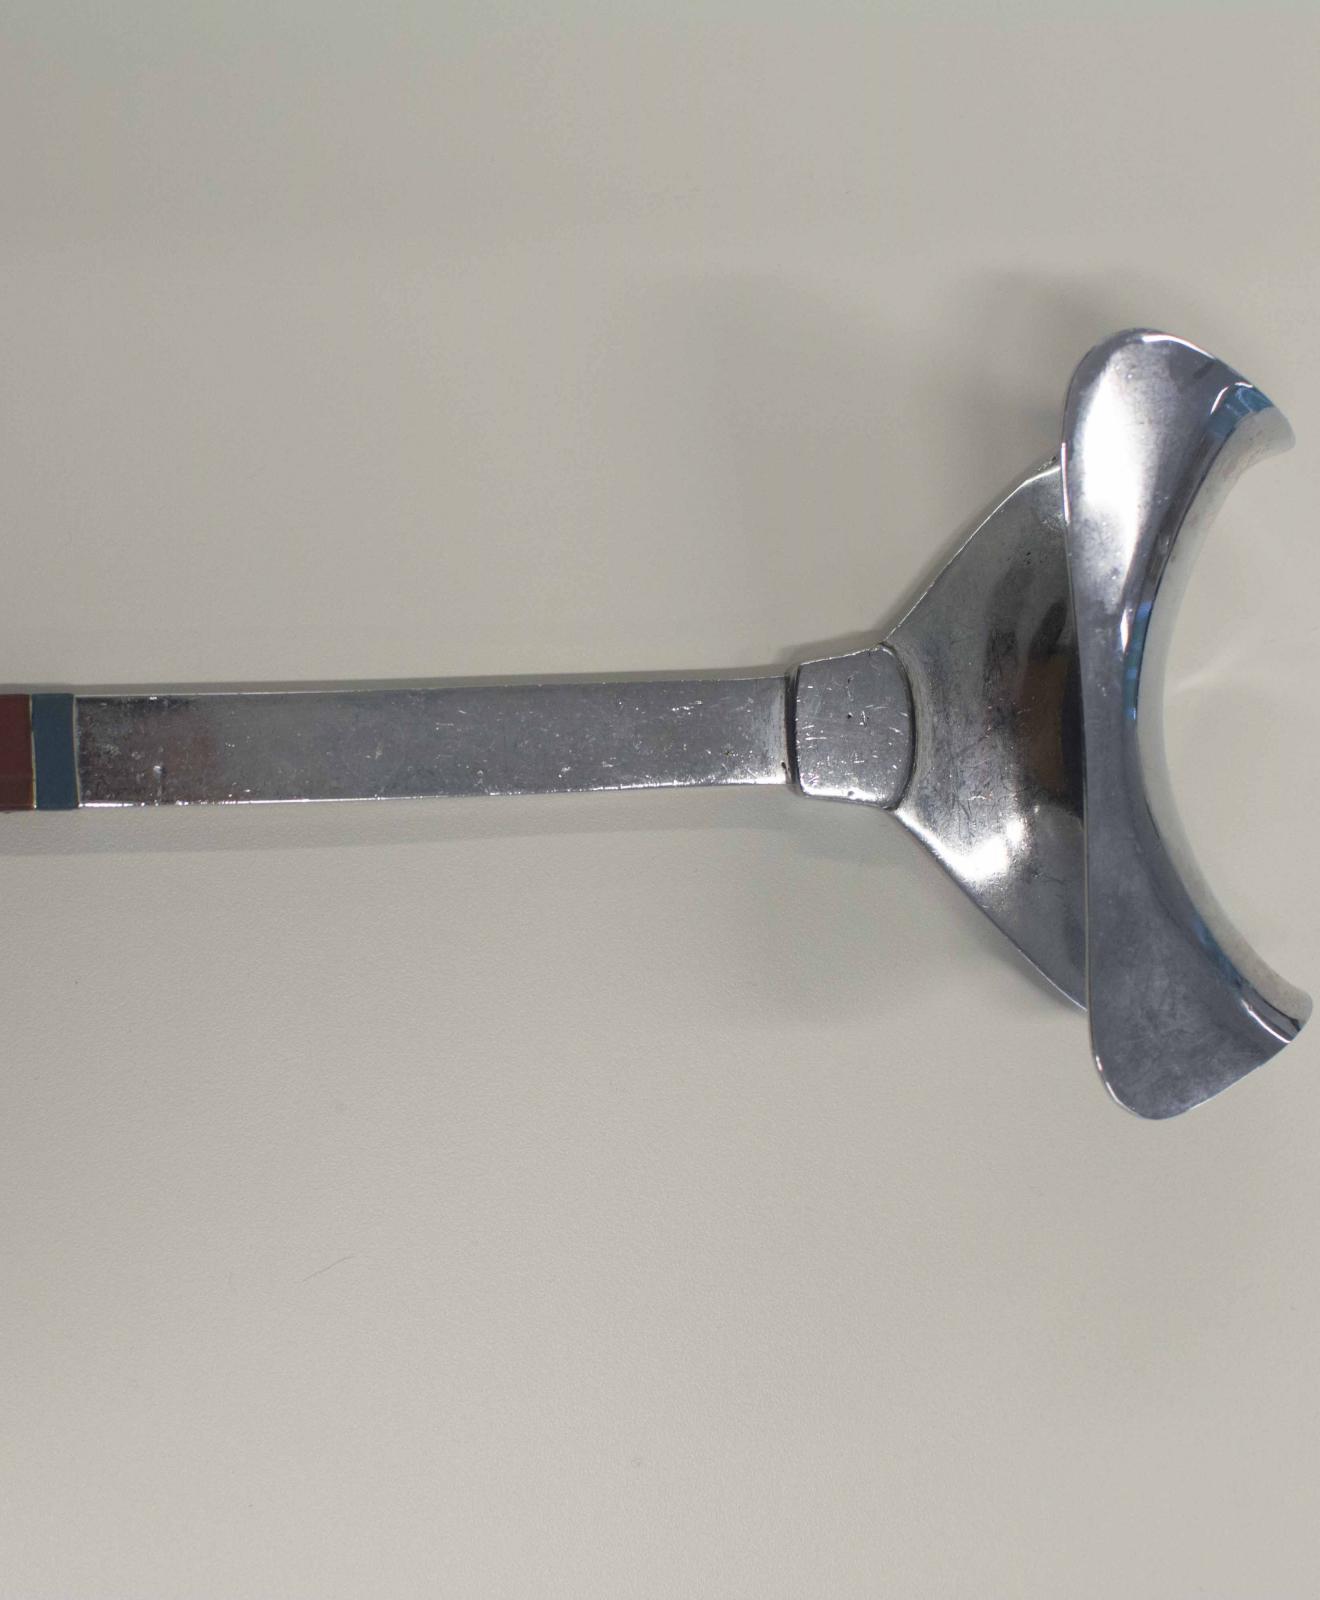 Instrumento metálico con forma de pala. Un extremo presenta forma de ancla, rematado con un aro y el extremo cuenta con una estructura cóncava